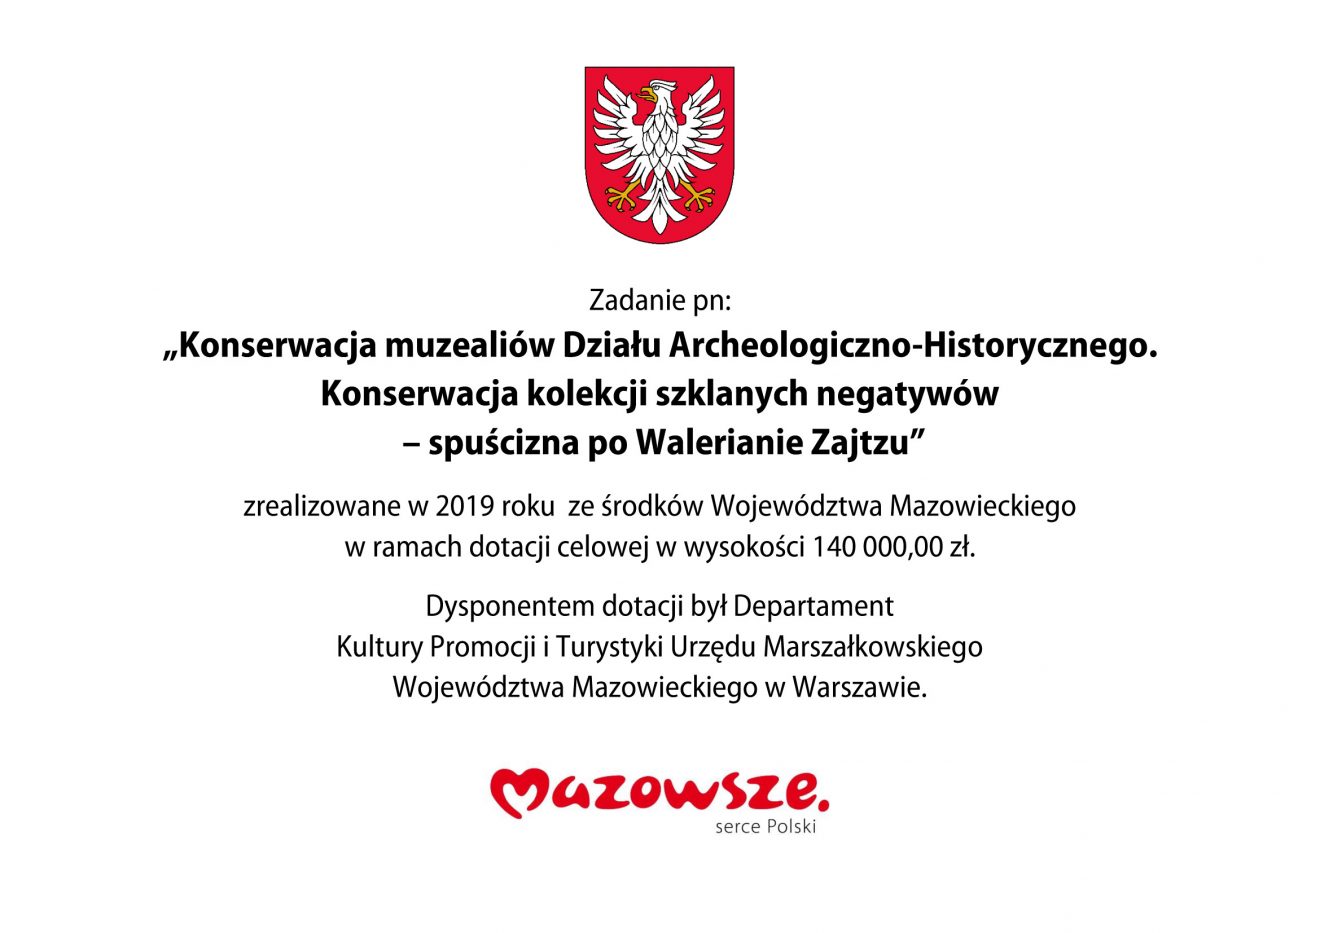 Tabliczka informacja o zrealizowaniu zadania z logotypem Mazowsza